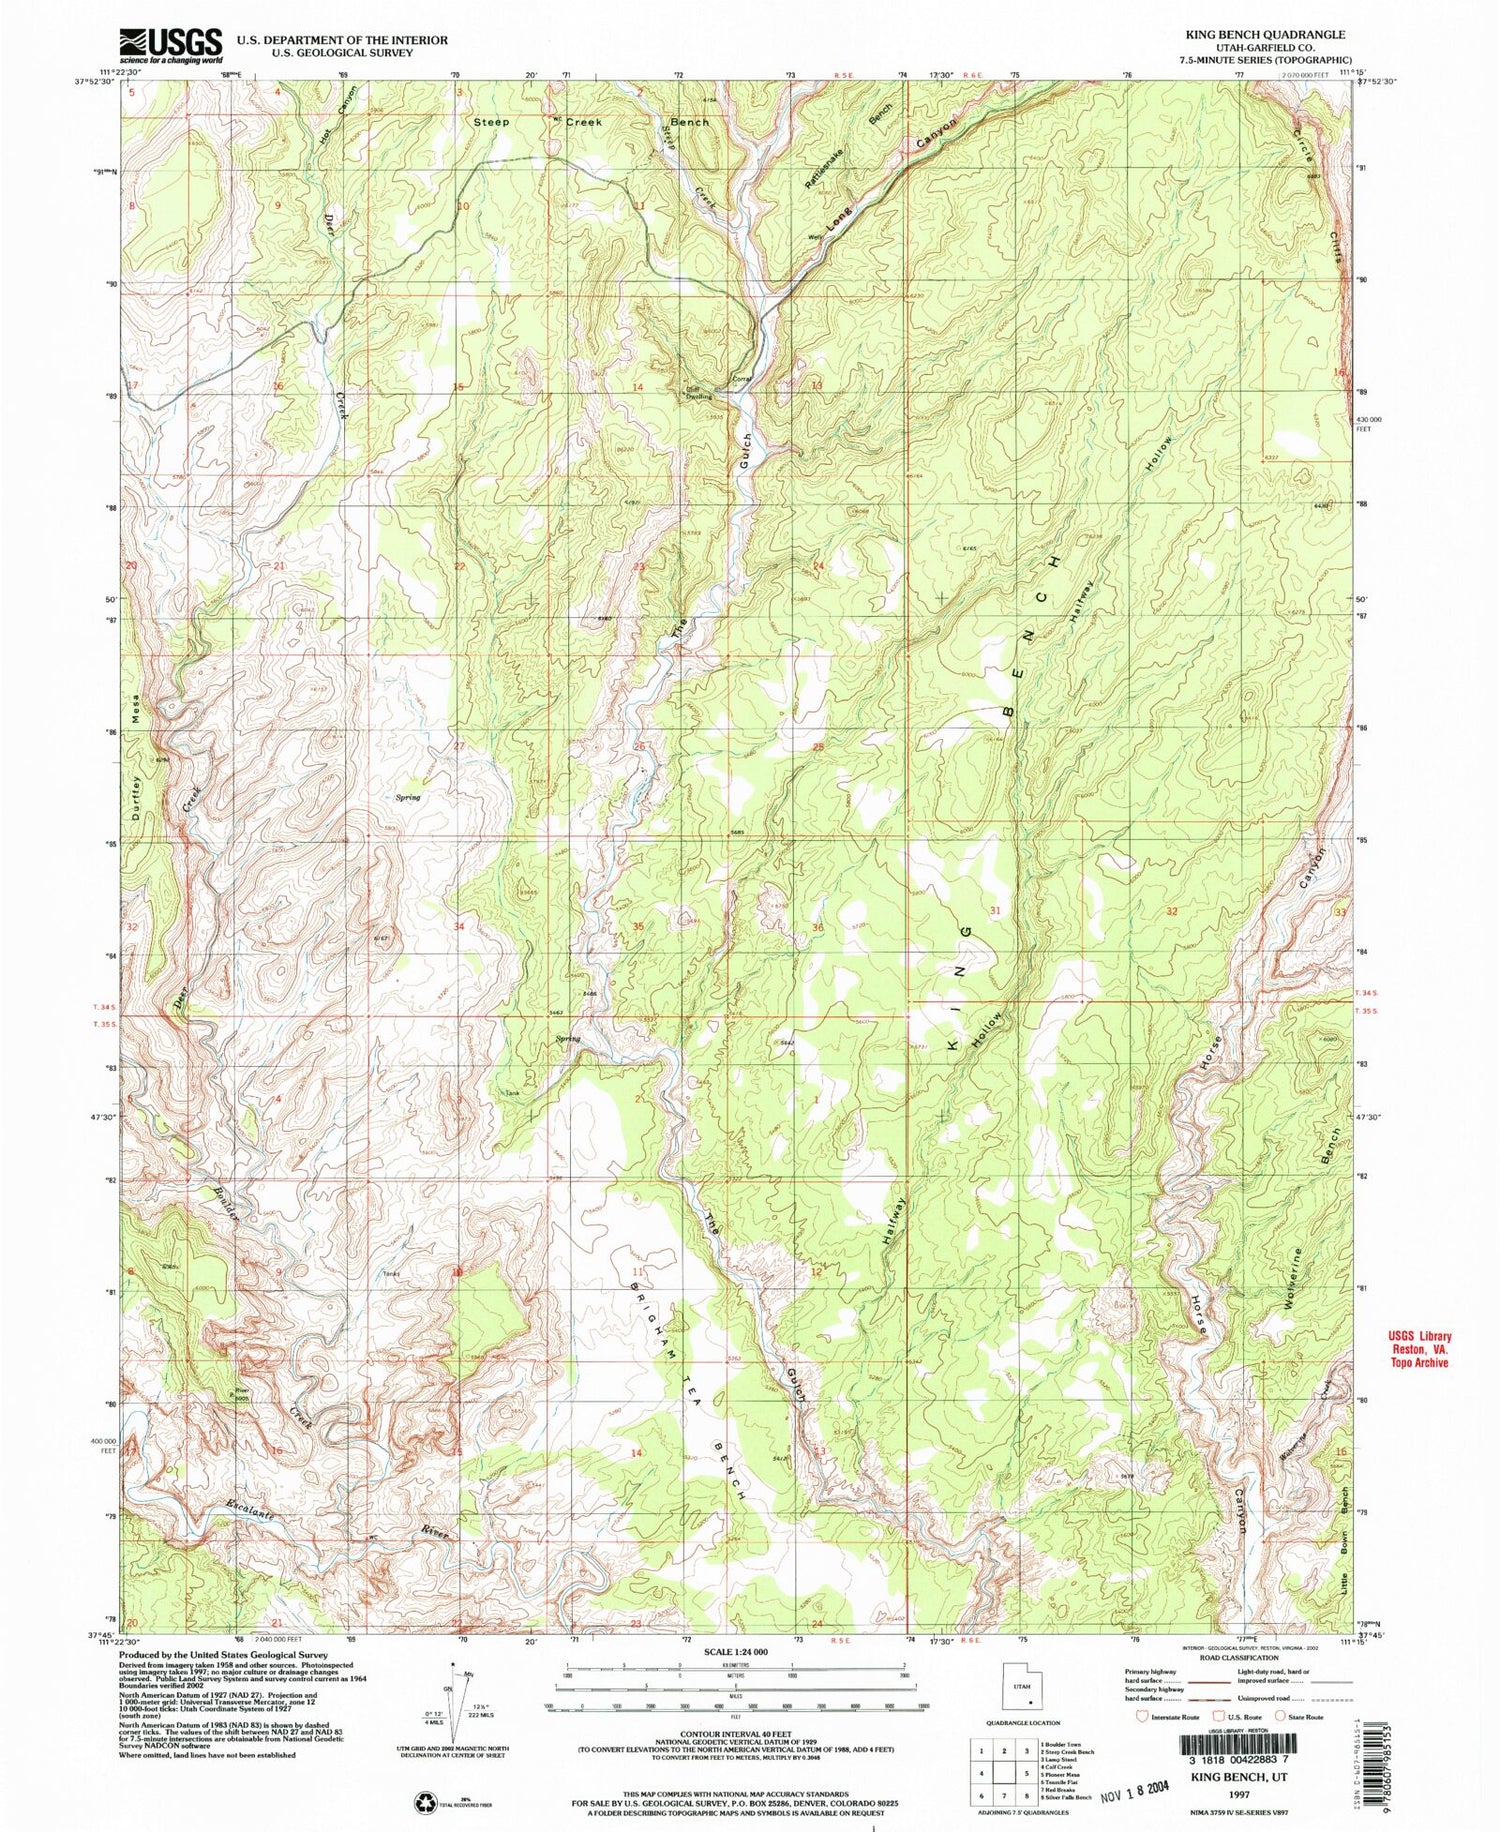 Classic USGS King Bench Utah 7.5'x7.5' Topo Map Image